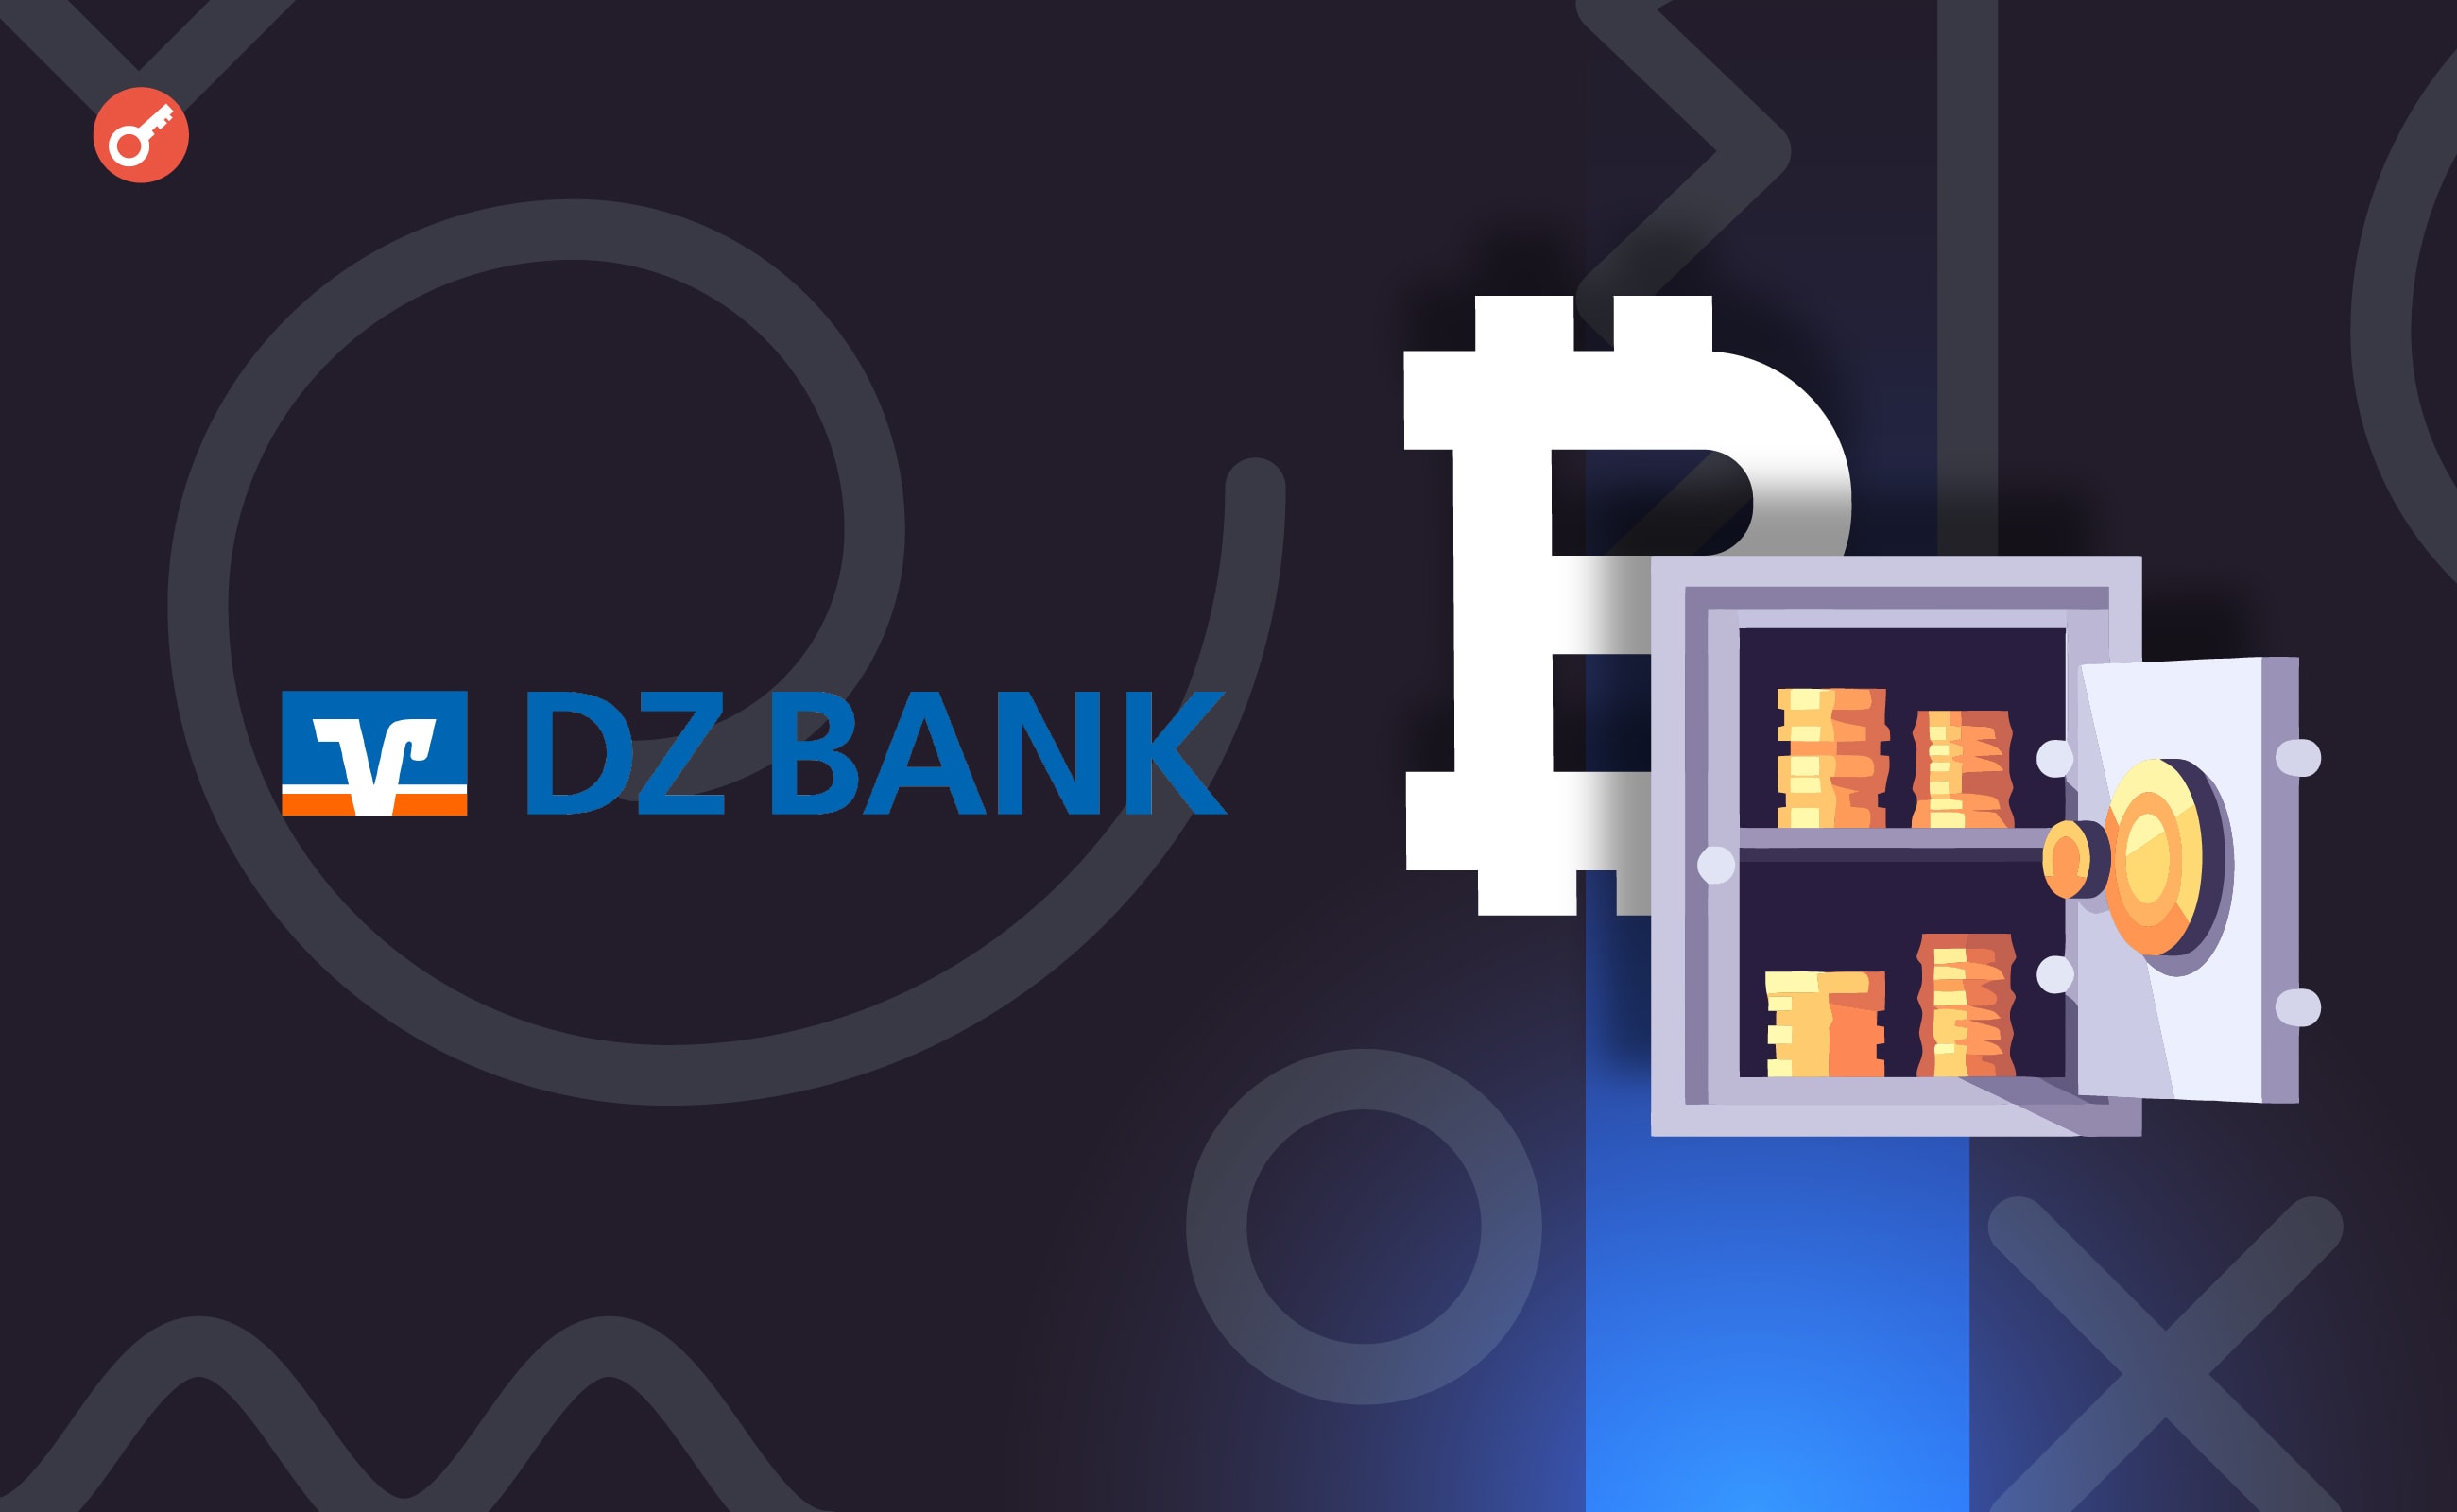 Німецький банк DZ Bank запустить пілотний проект торгівлі криптовалютами. Головний колаж новини.